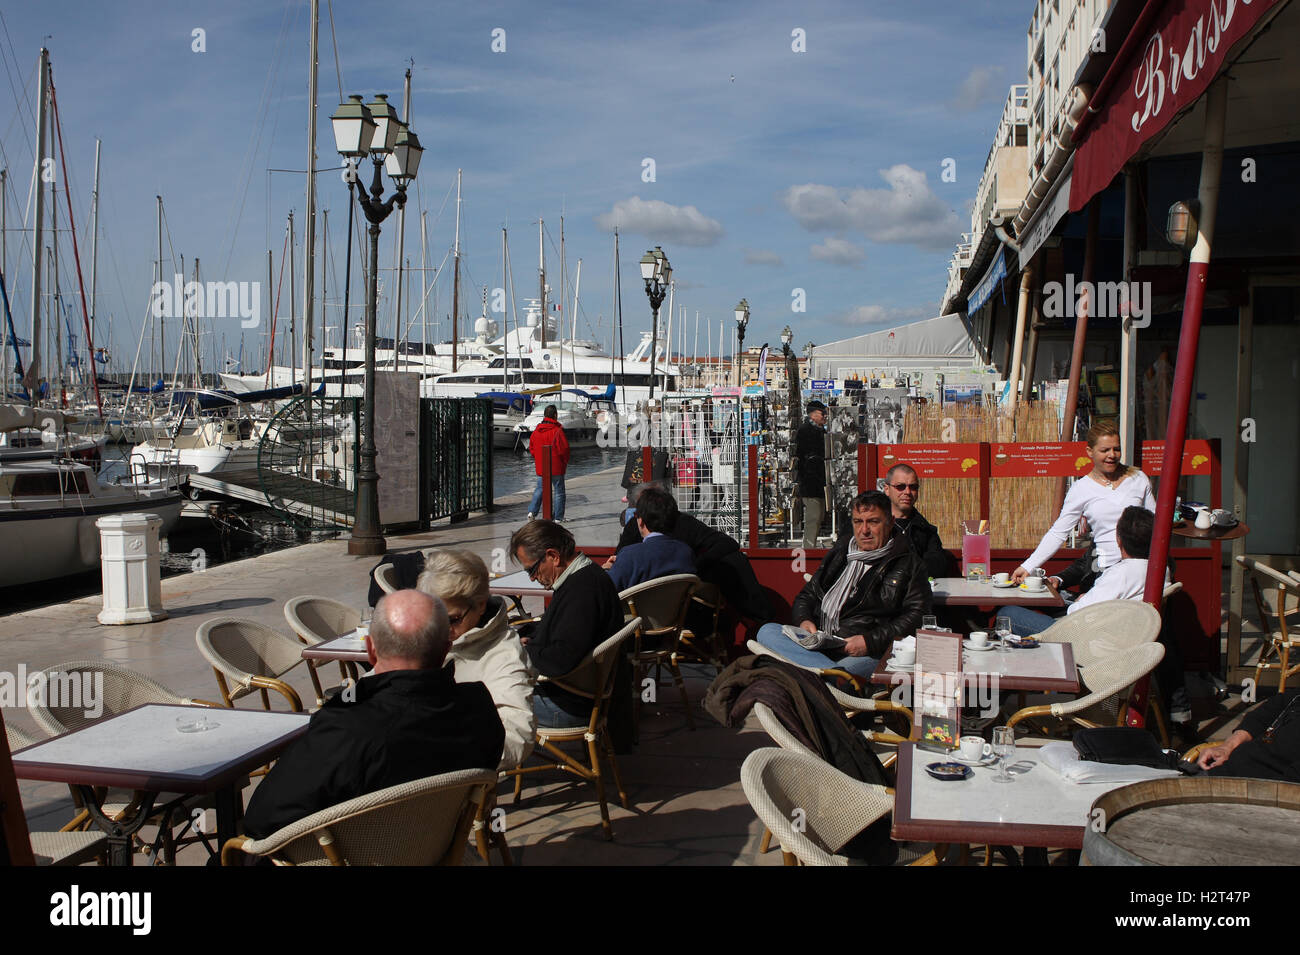 Café-dans le port de Toulon, Var, Cote d'Azur, Provence, France, Europe Banque D'Images